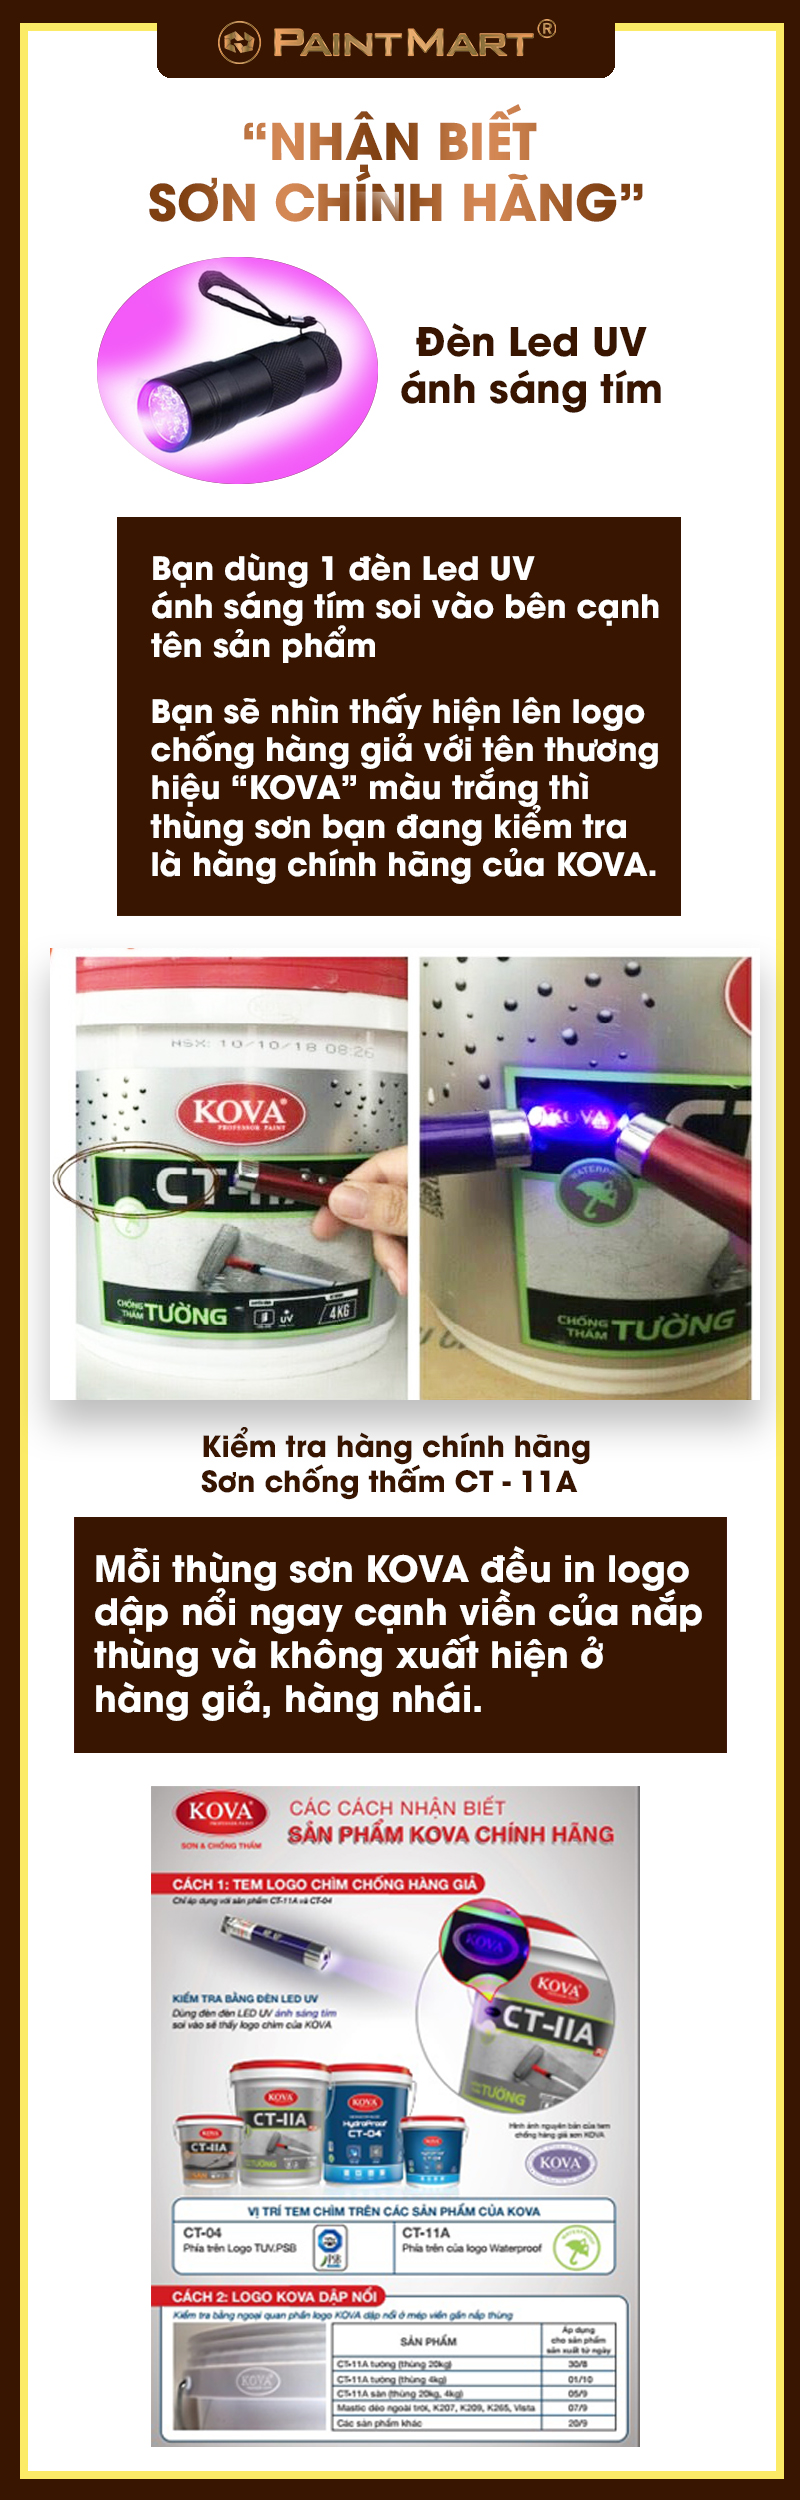 Sơn KOVA chính hãng: Sơn Kova chính hãng sẽ đem đến cho bạn một lớp sơn hoàn thiện, chất lượng và an toàn cho sức khỏe. Hãy xem hình ảnh và chọn sản phẩm chính hãng để có một công trình hoàn hảo.